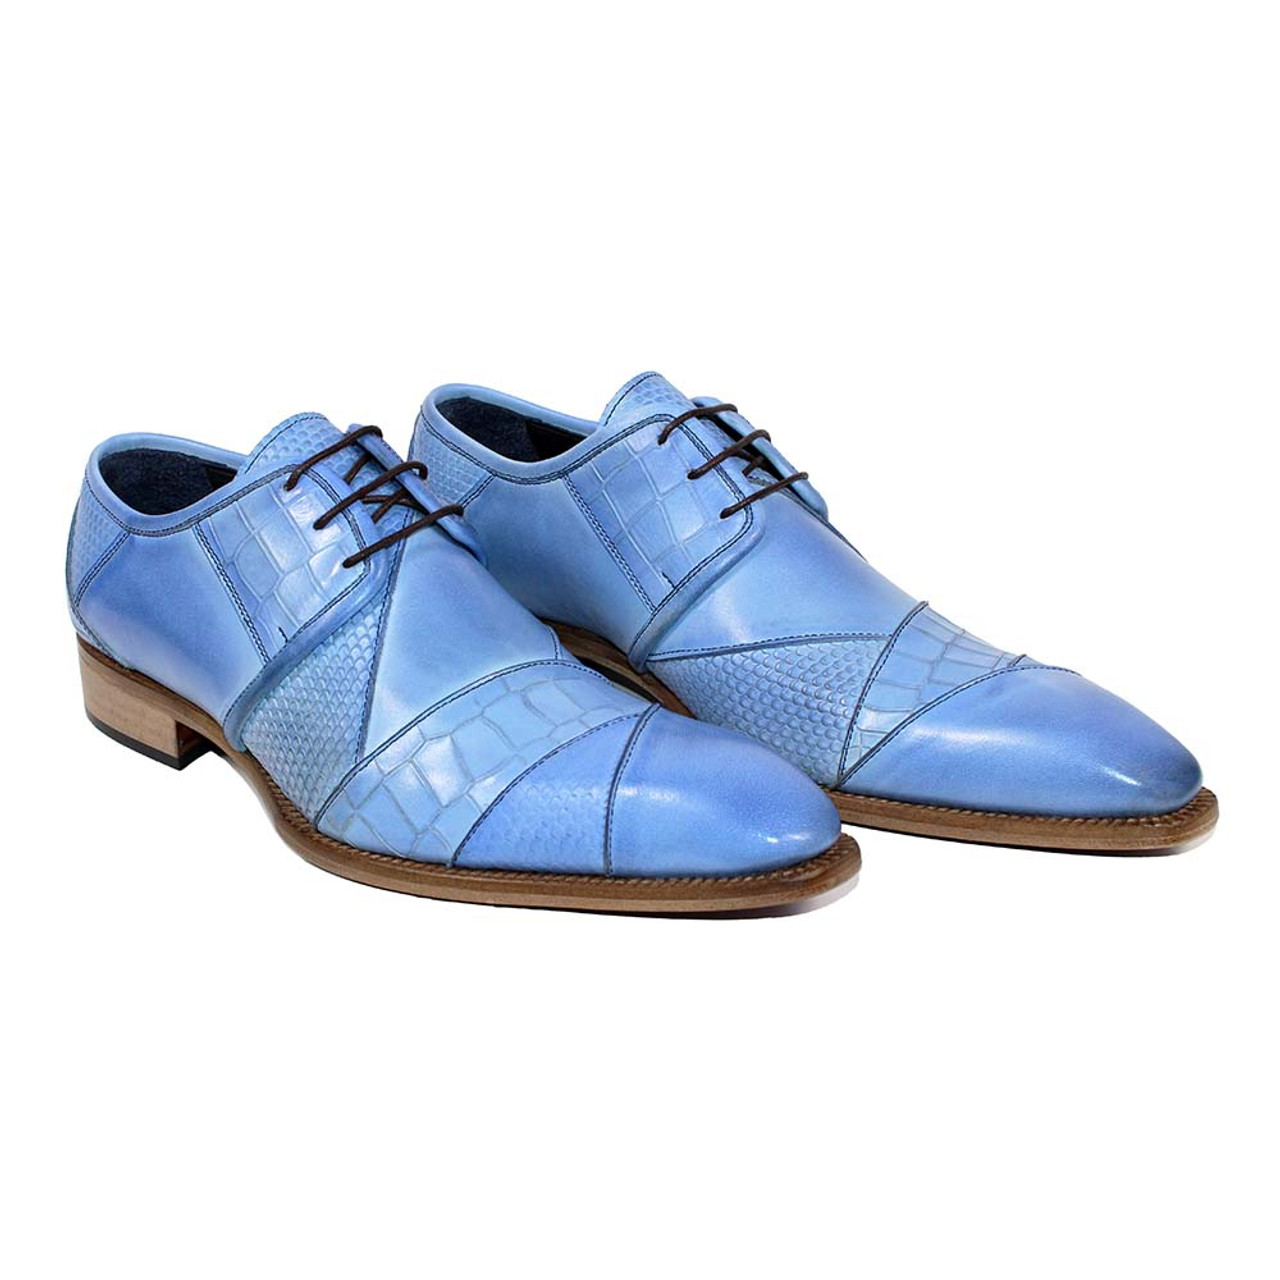 ins】Original Louis Vuitton classic men business leather shoes fashion trend  wild dress shoes drivin